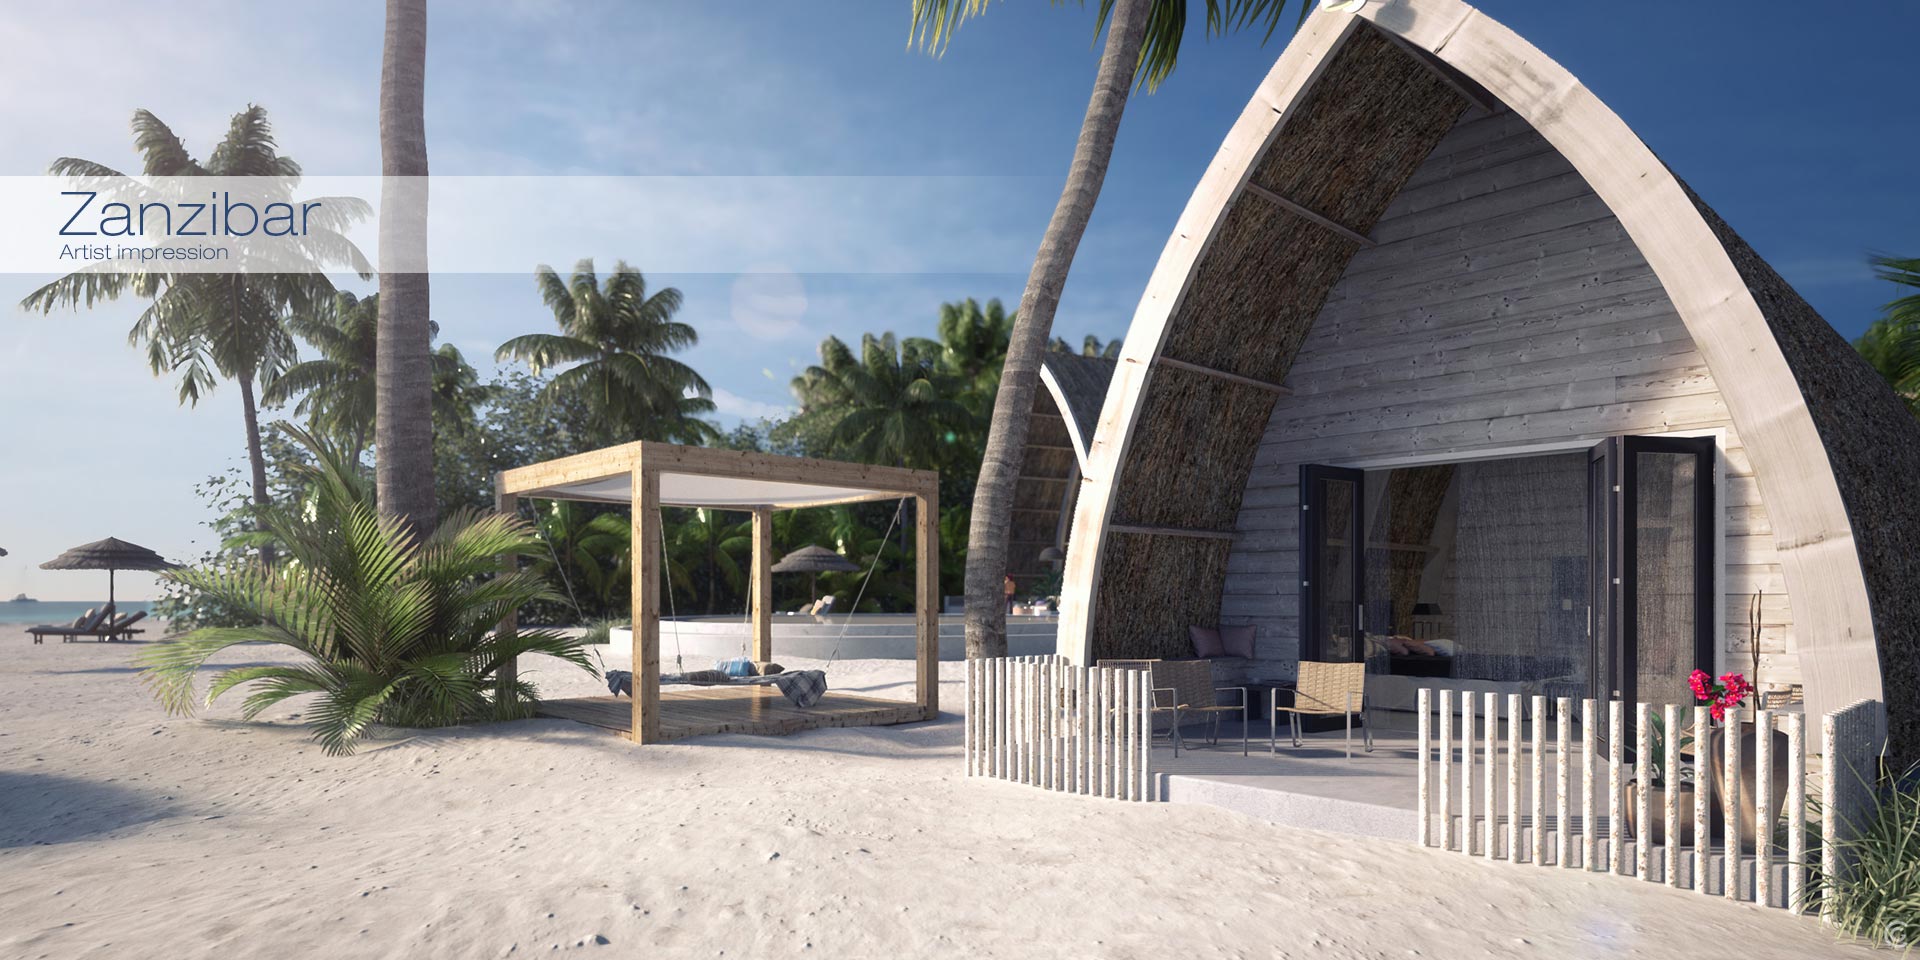 Artist impression Zanzibar. Deze 3D impressie geeft een beeld van de toekomstige werkelijkheid.